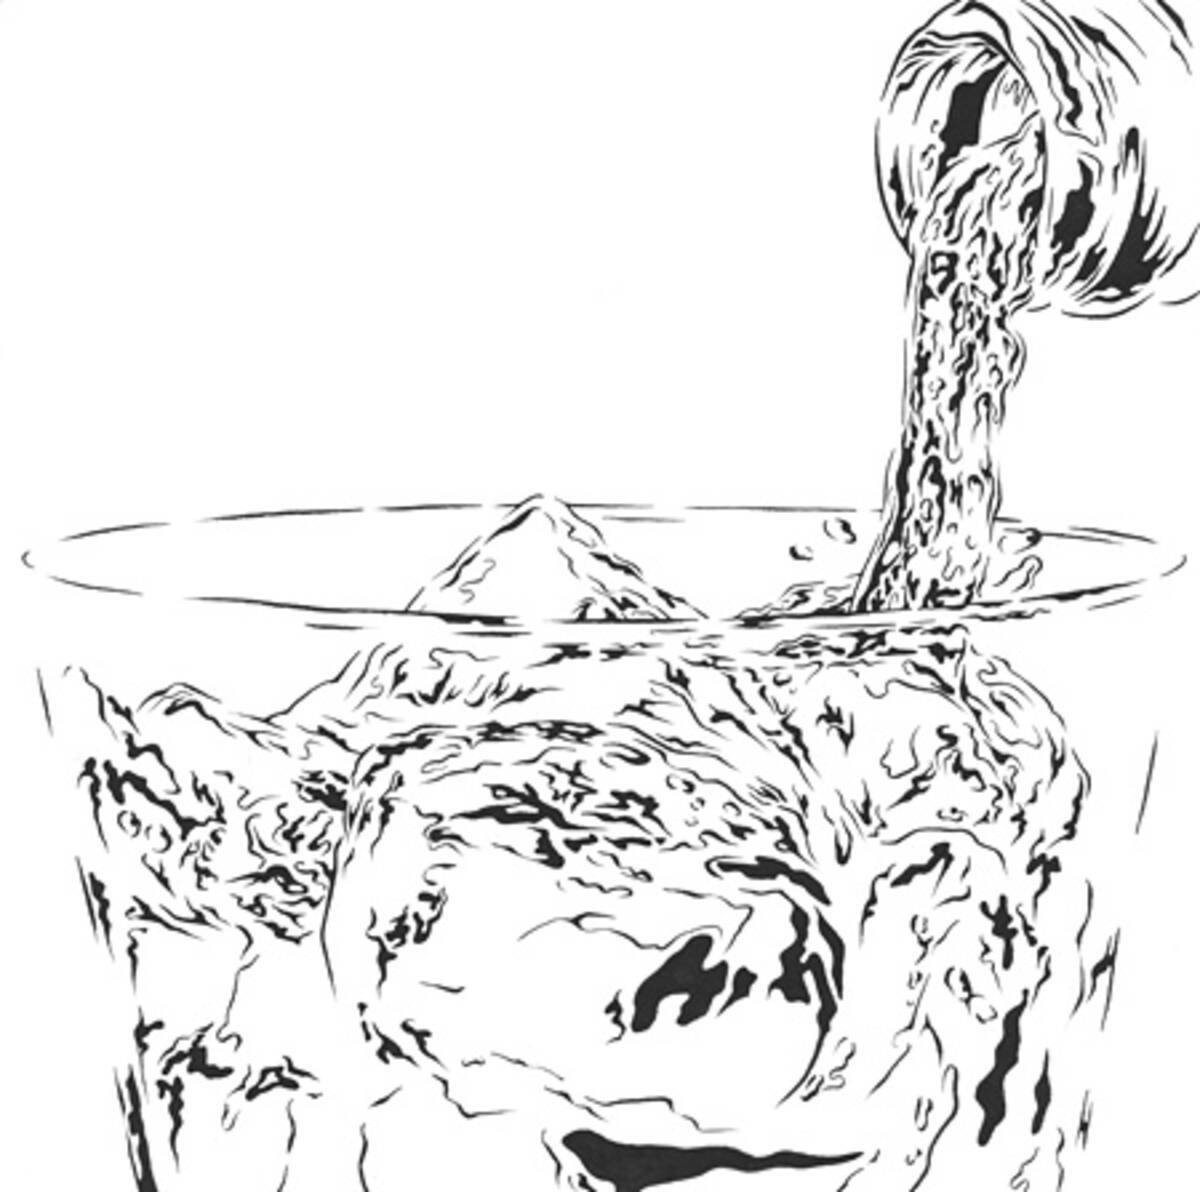 黒田潔個展 Water に約40点 水 のモチーフをモノクロで描く 15年7月14日 エキサイトニュース